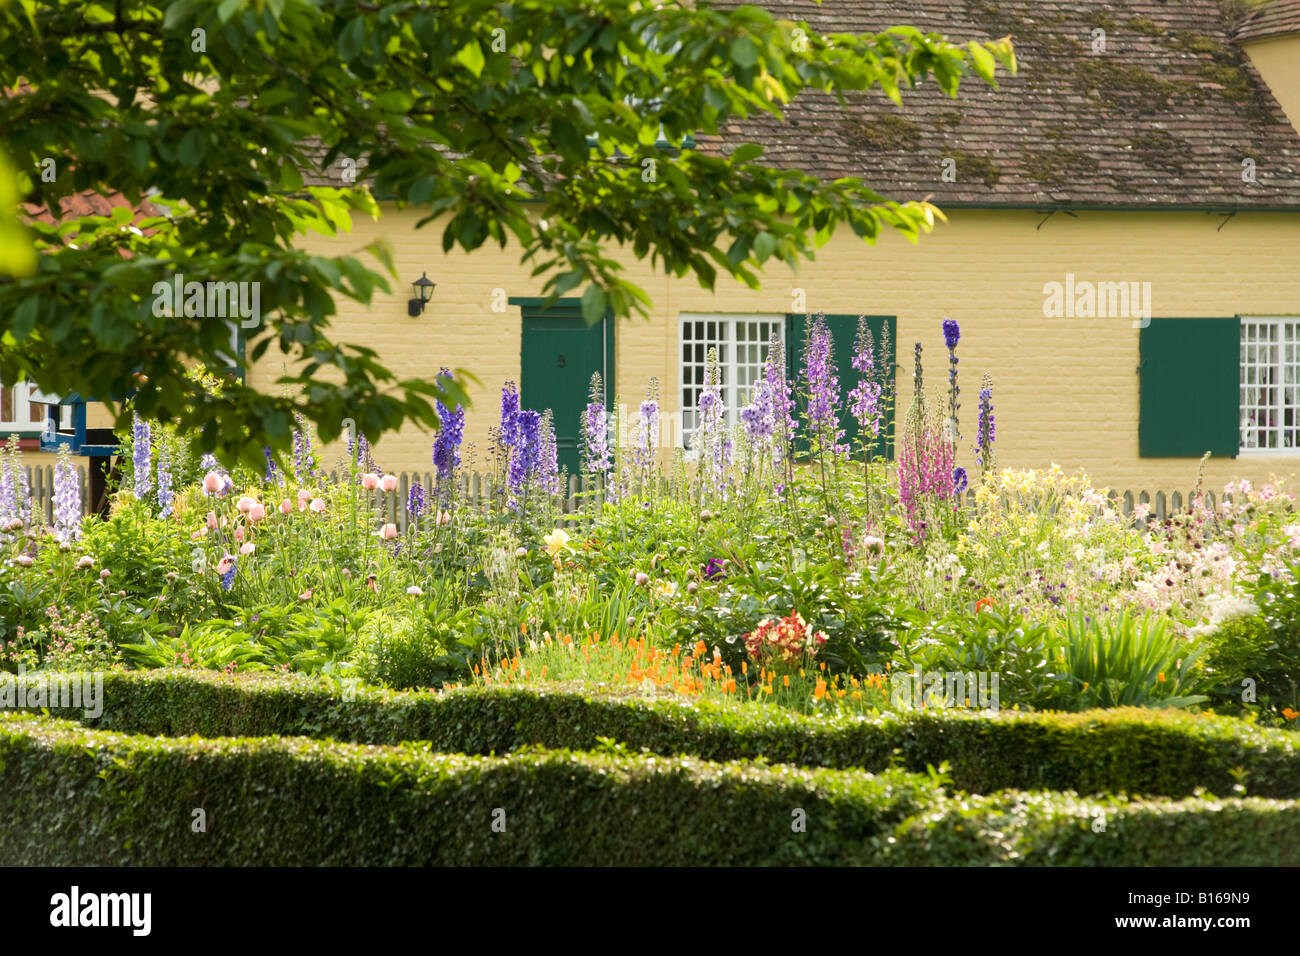 Peaceful english village house and garden; Summer flowers in an English village garden, Chippenham, Cambridgeshire UK Stock Photo